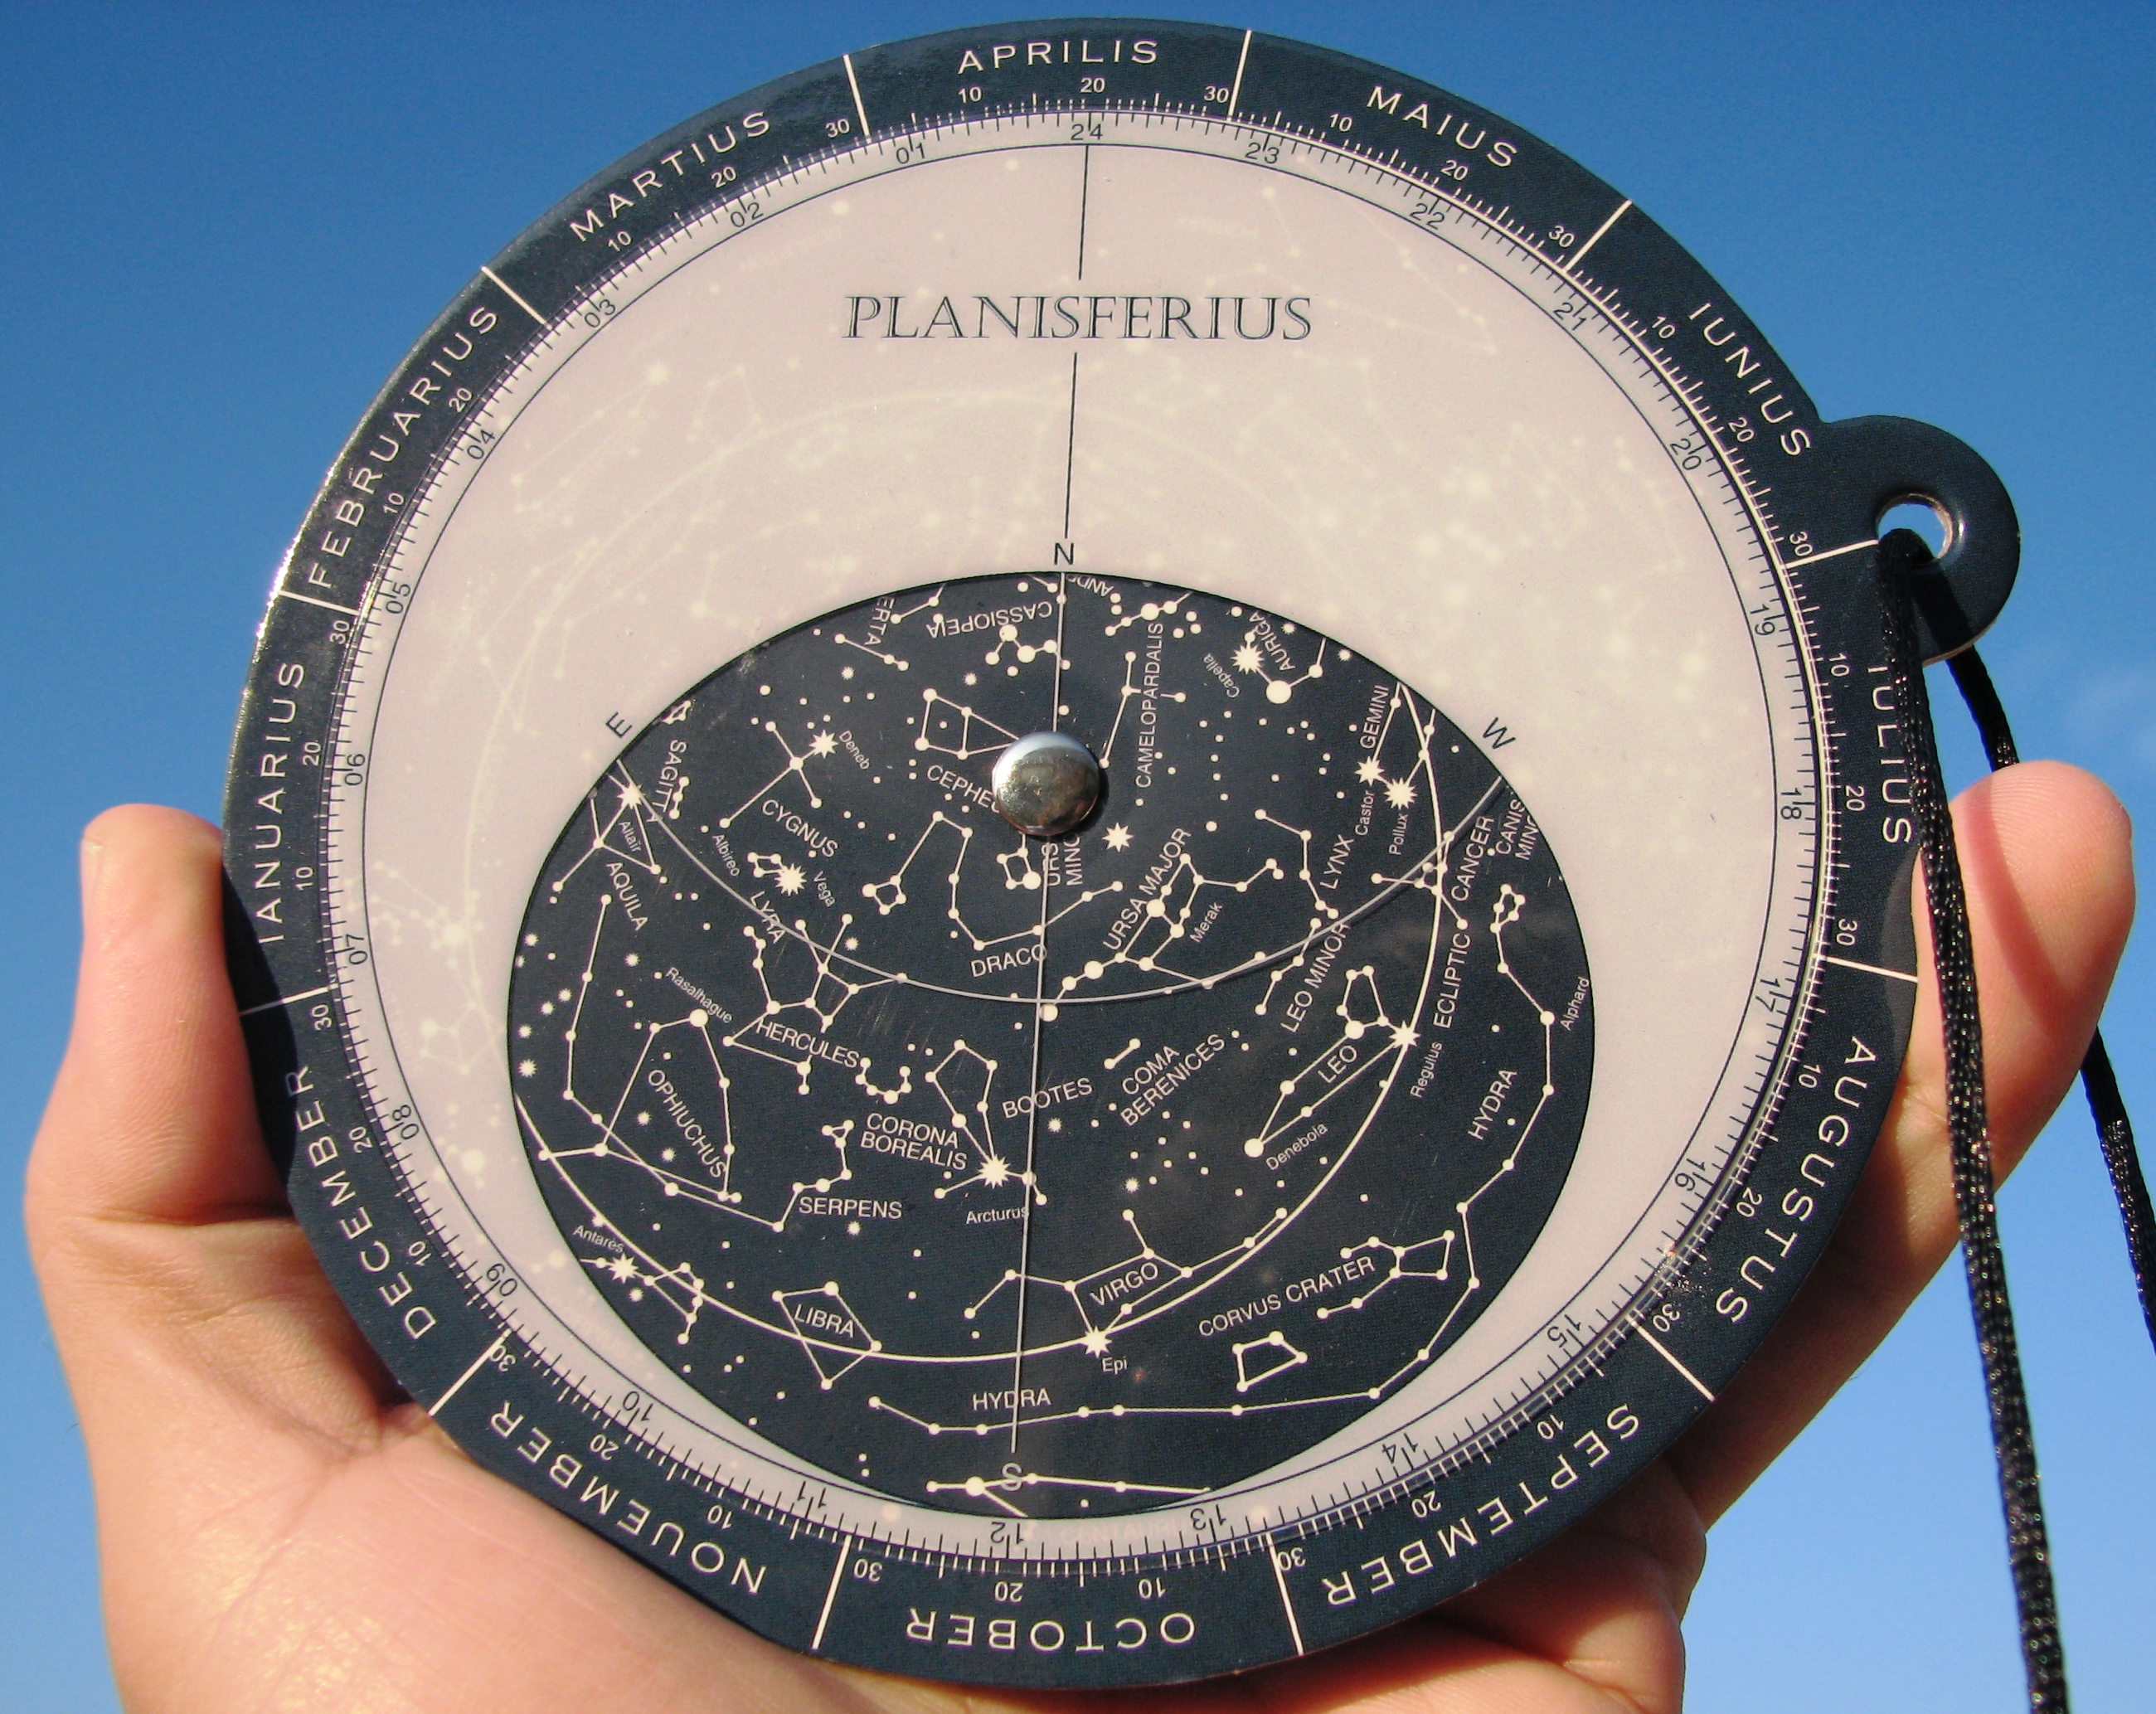 Planisferius